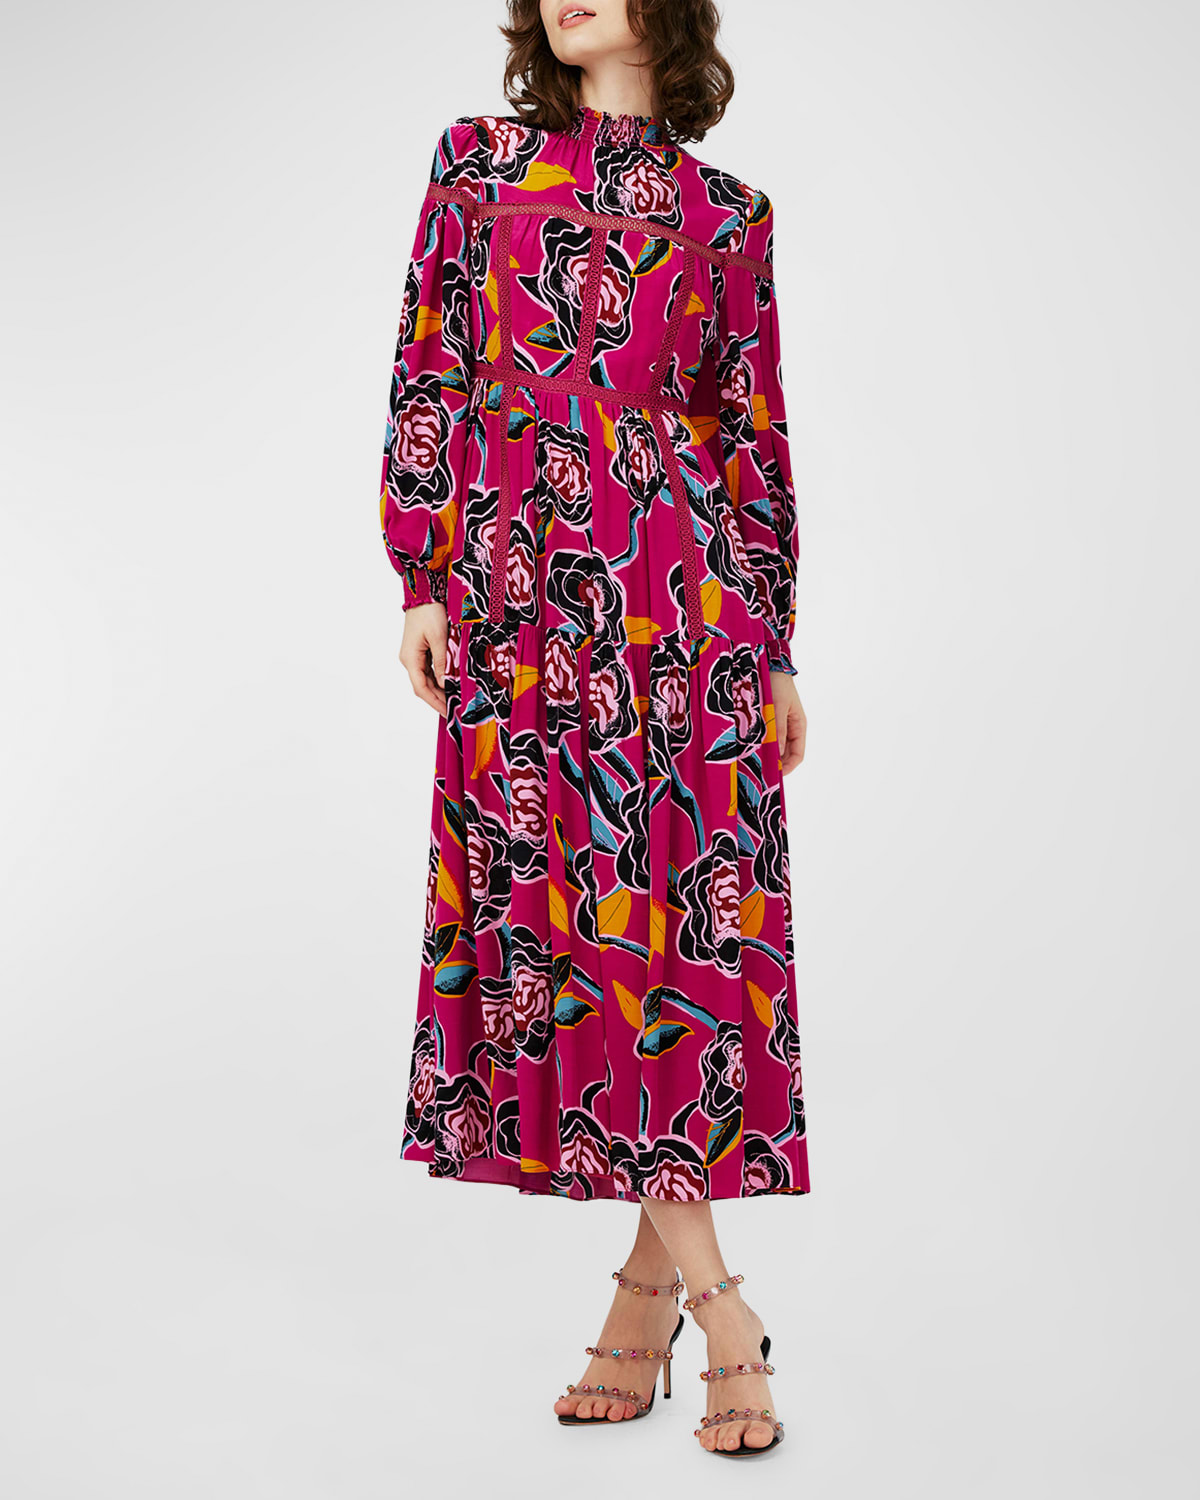 Cherie Floral-Print Lace-Inset Midi Dress